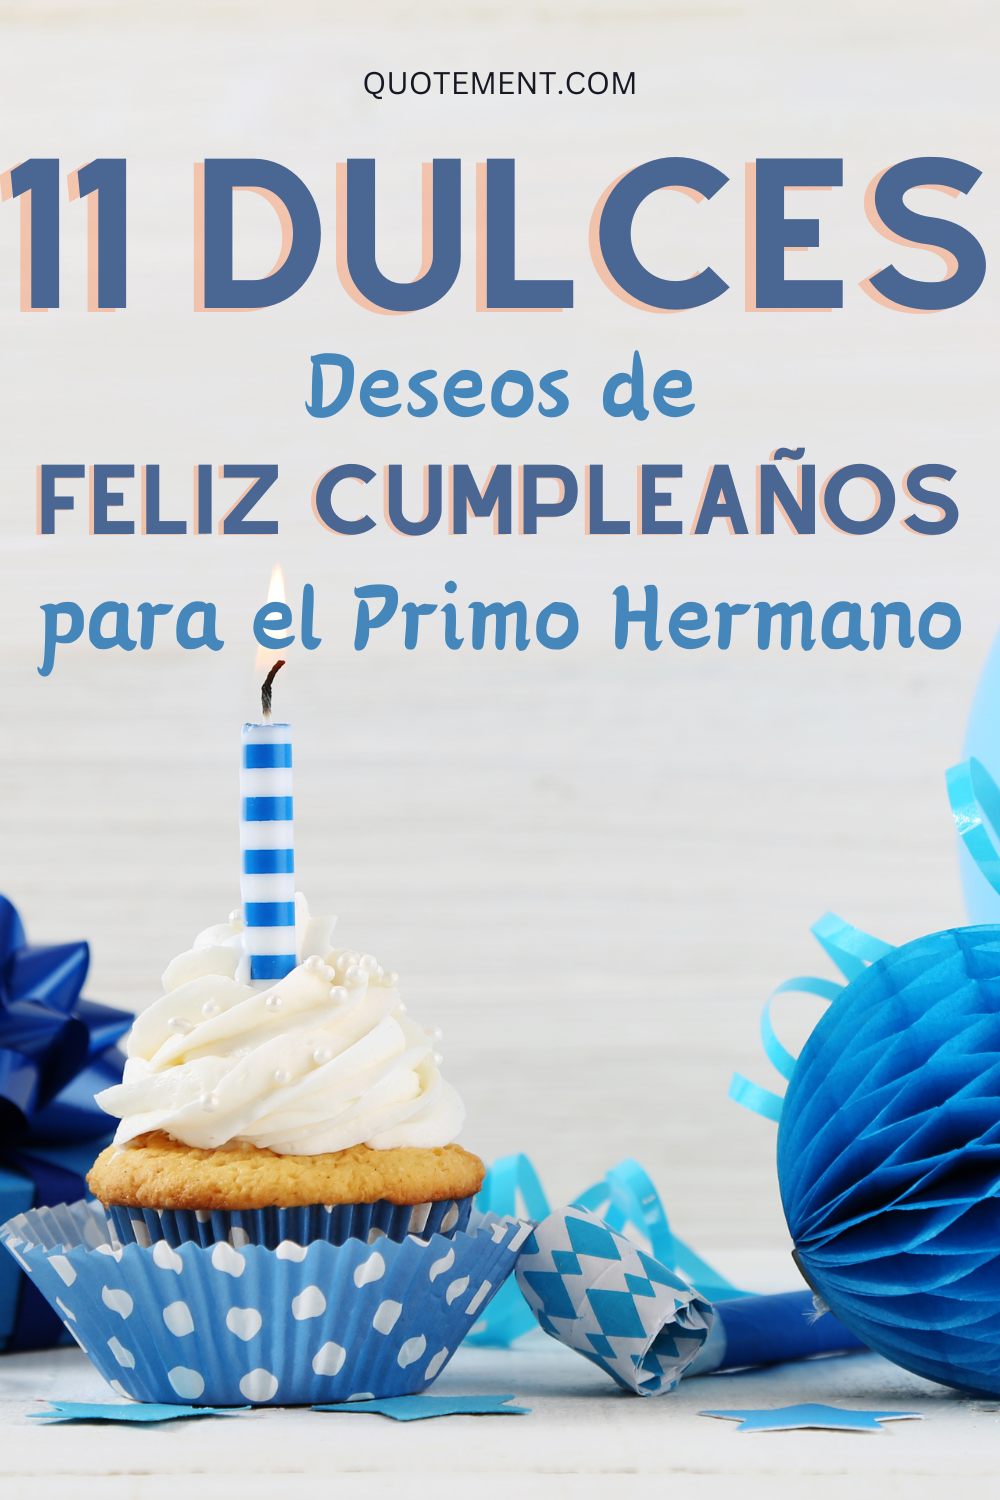 110 Conmovedores Deseos de Feliz Cumpleaños para el Primo Hermano